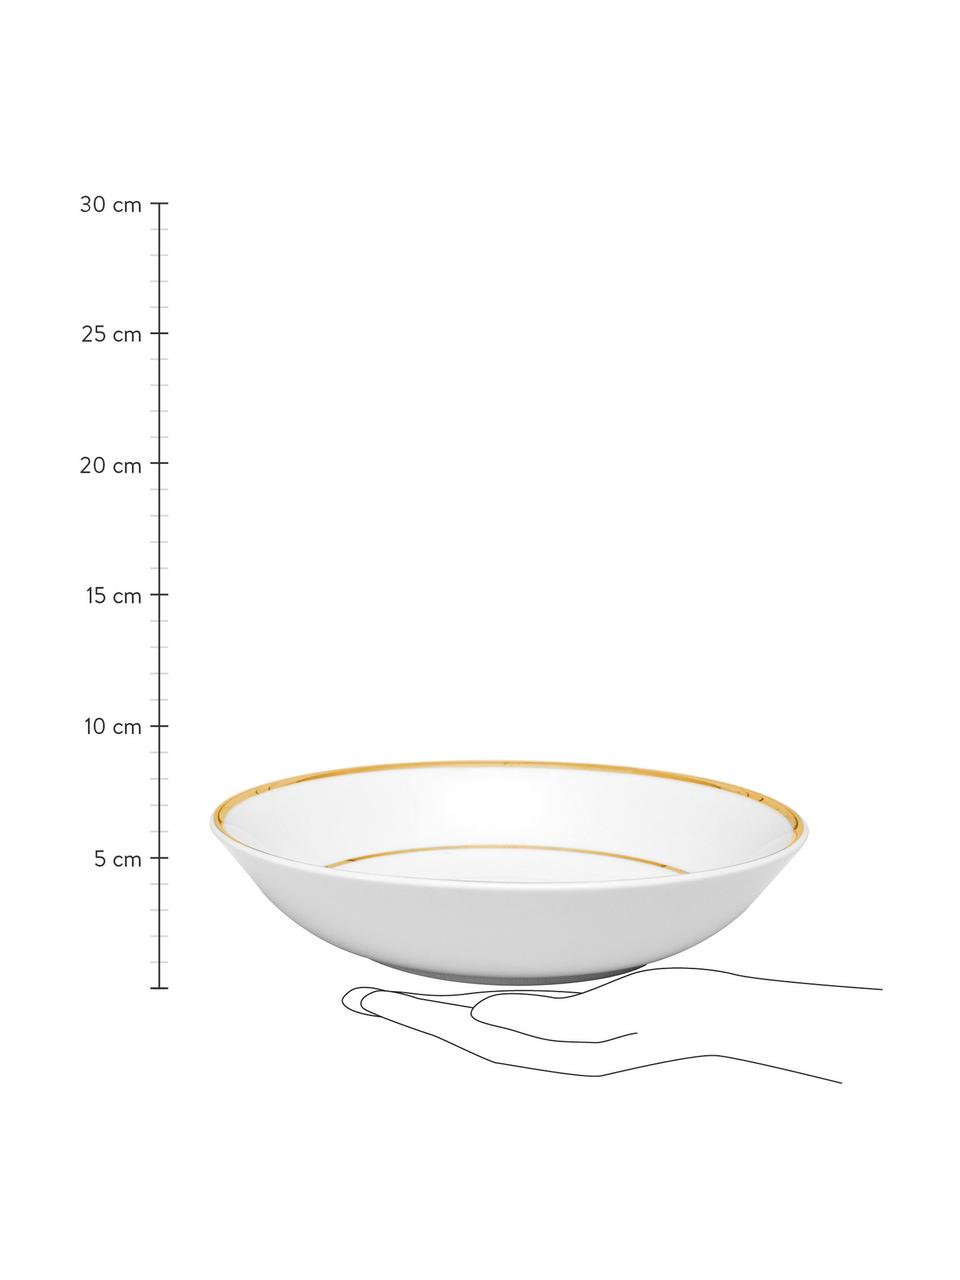 Porzellan-Suppenteller Ginger mit Goldrand, 6 Stück, Porzellan, Weiß, Goldfarben, Ø 23 x H 5 cm